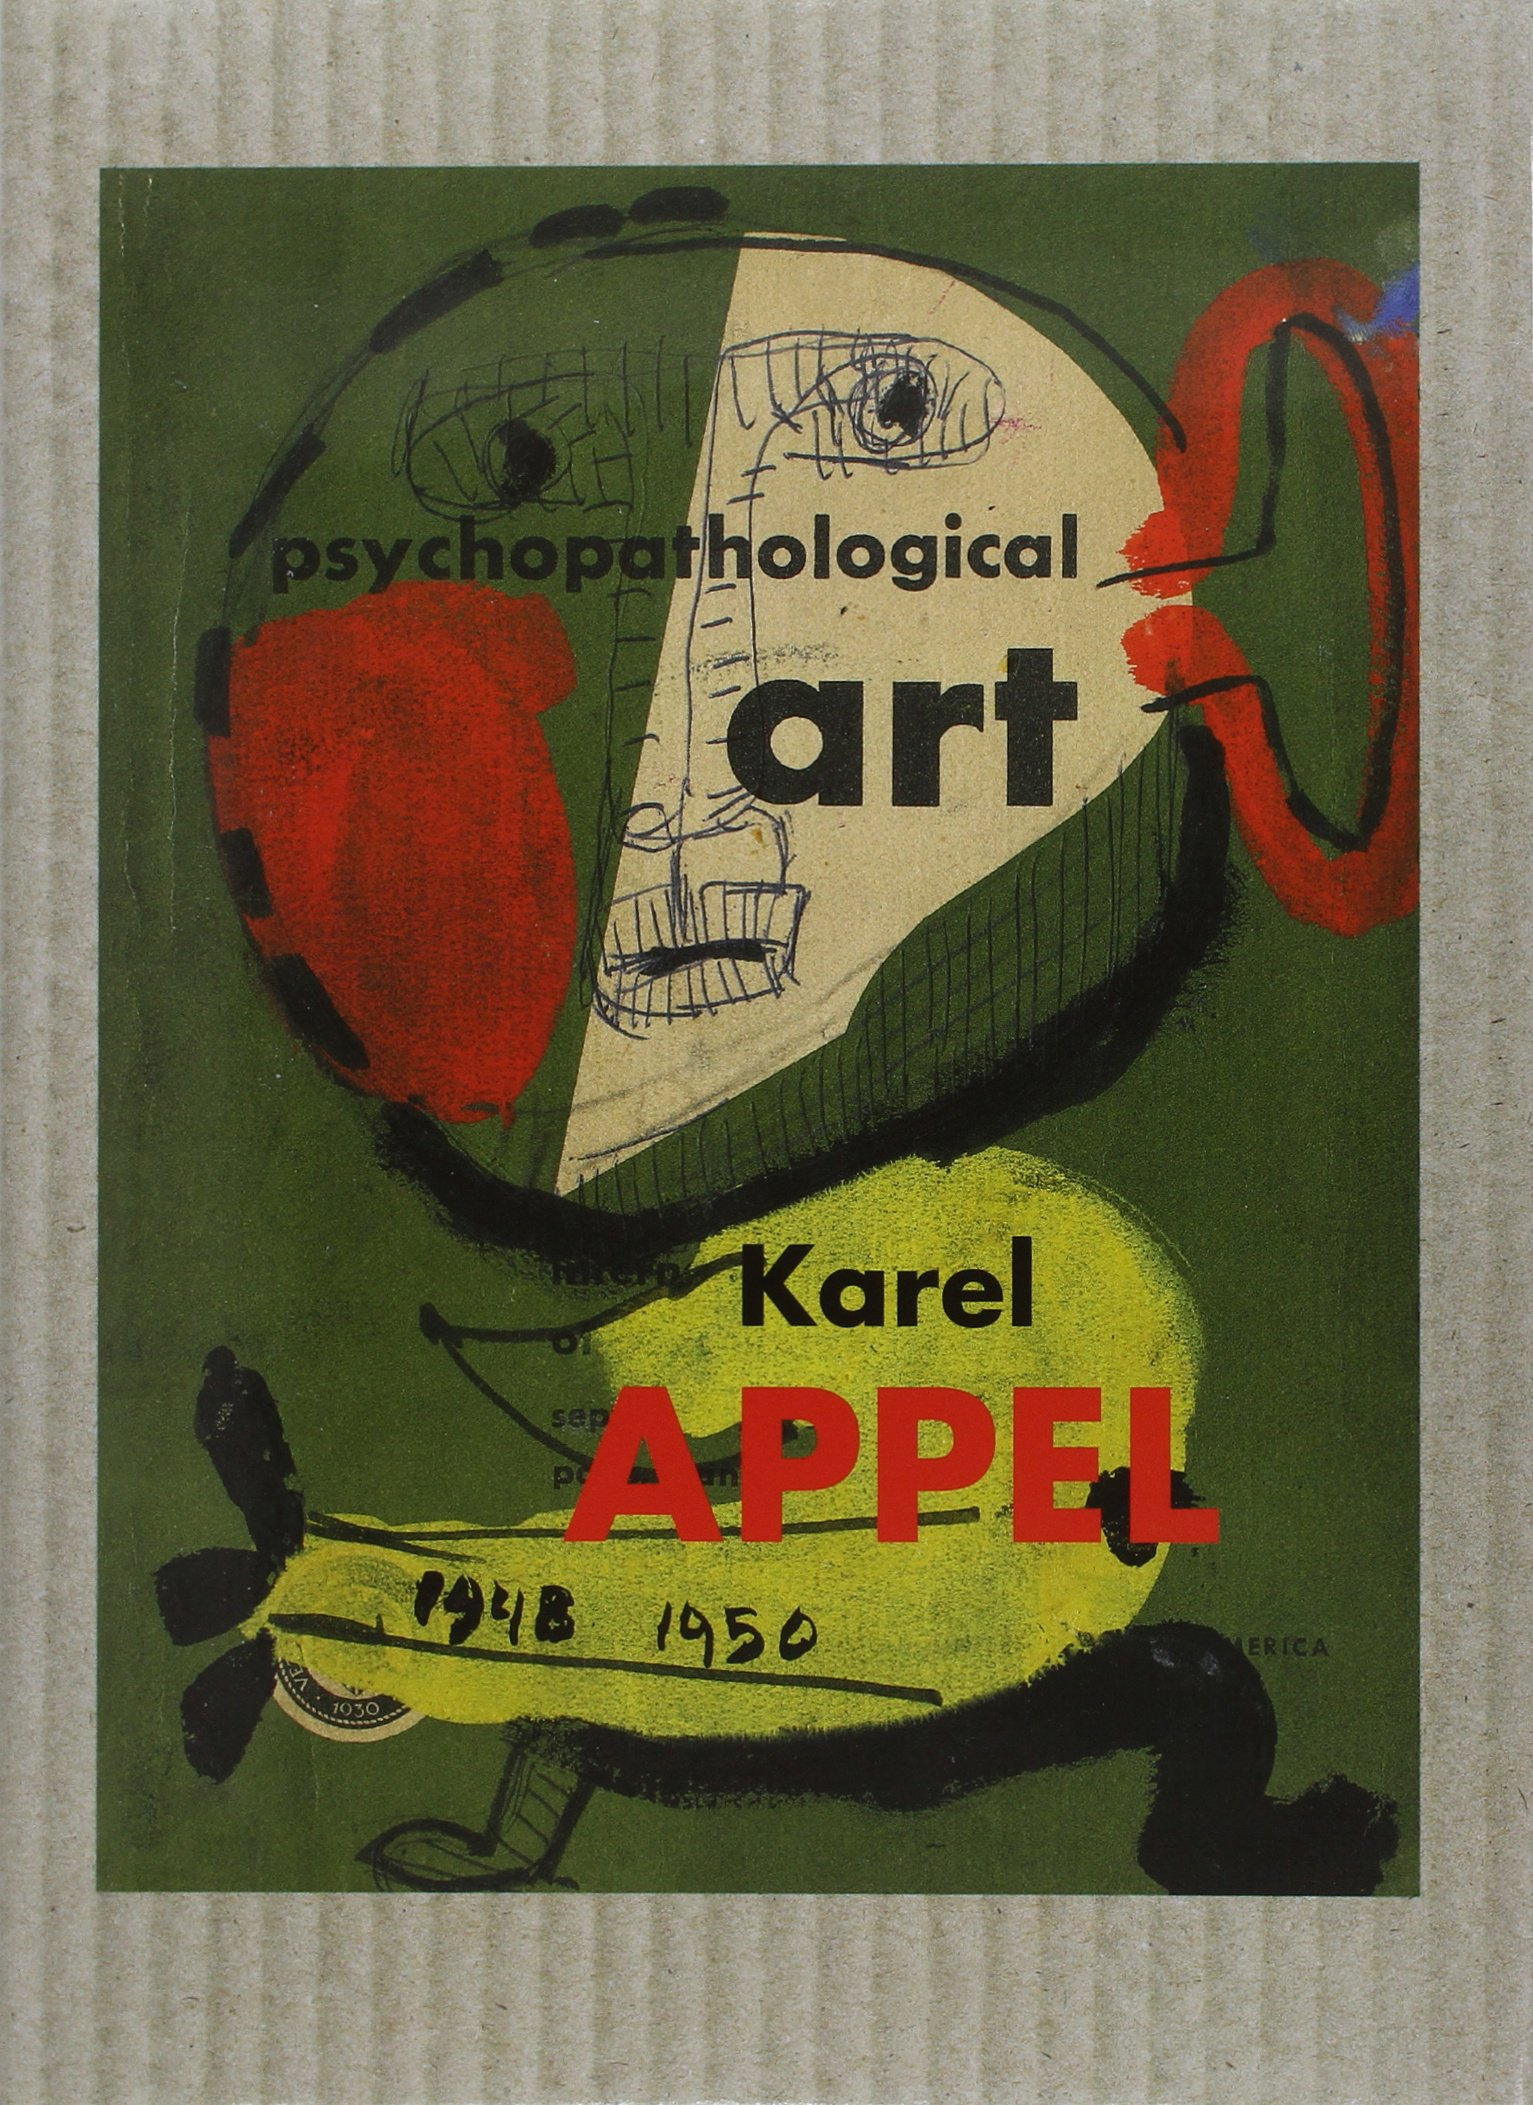 Karel Appel, l'art psychopathologique : dessins et gouaches 1948-1950